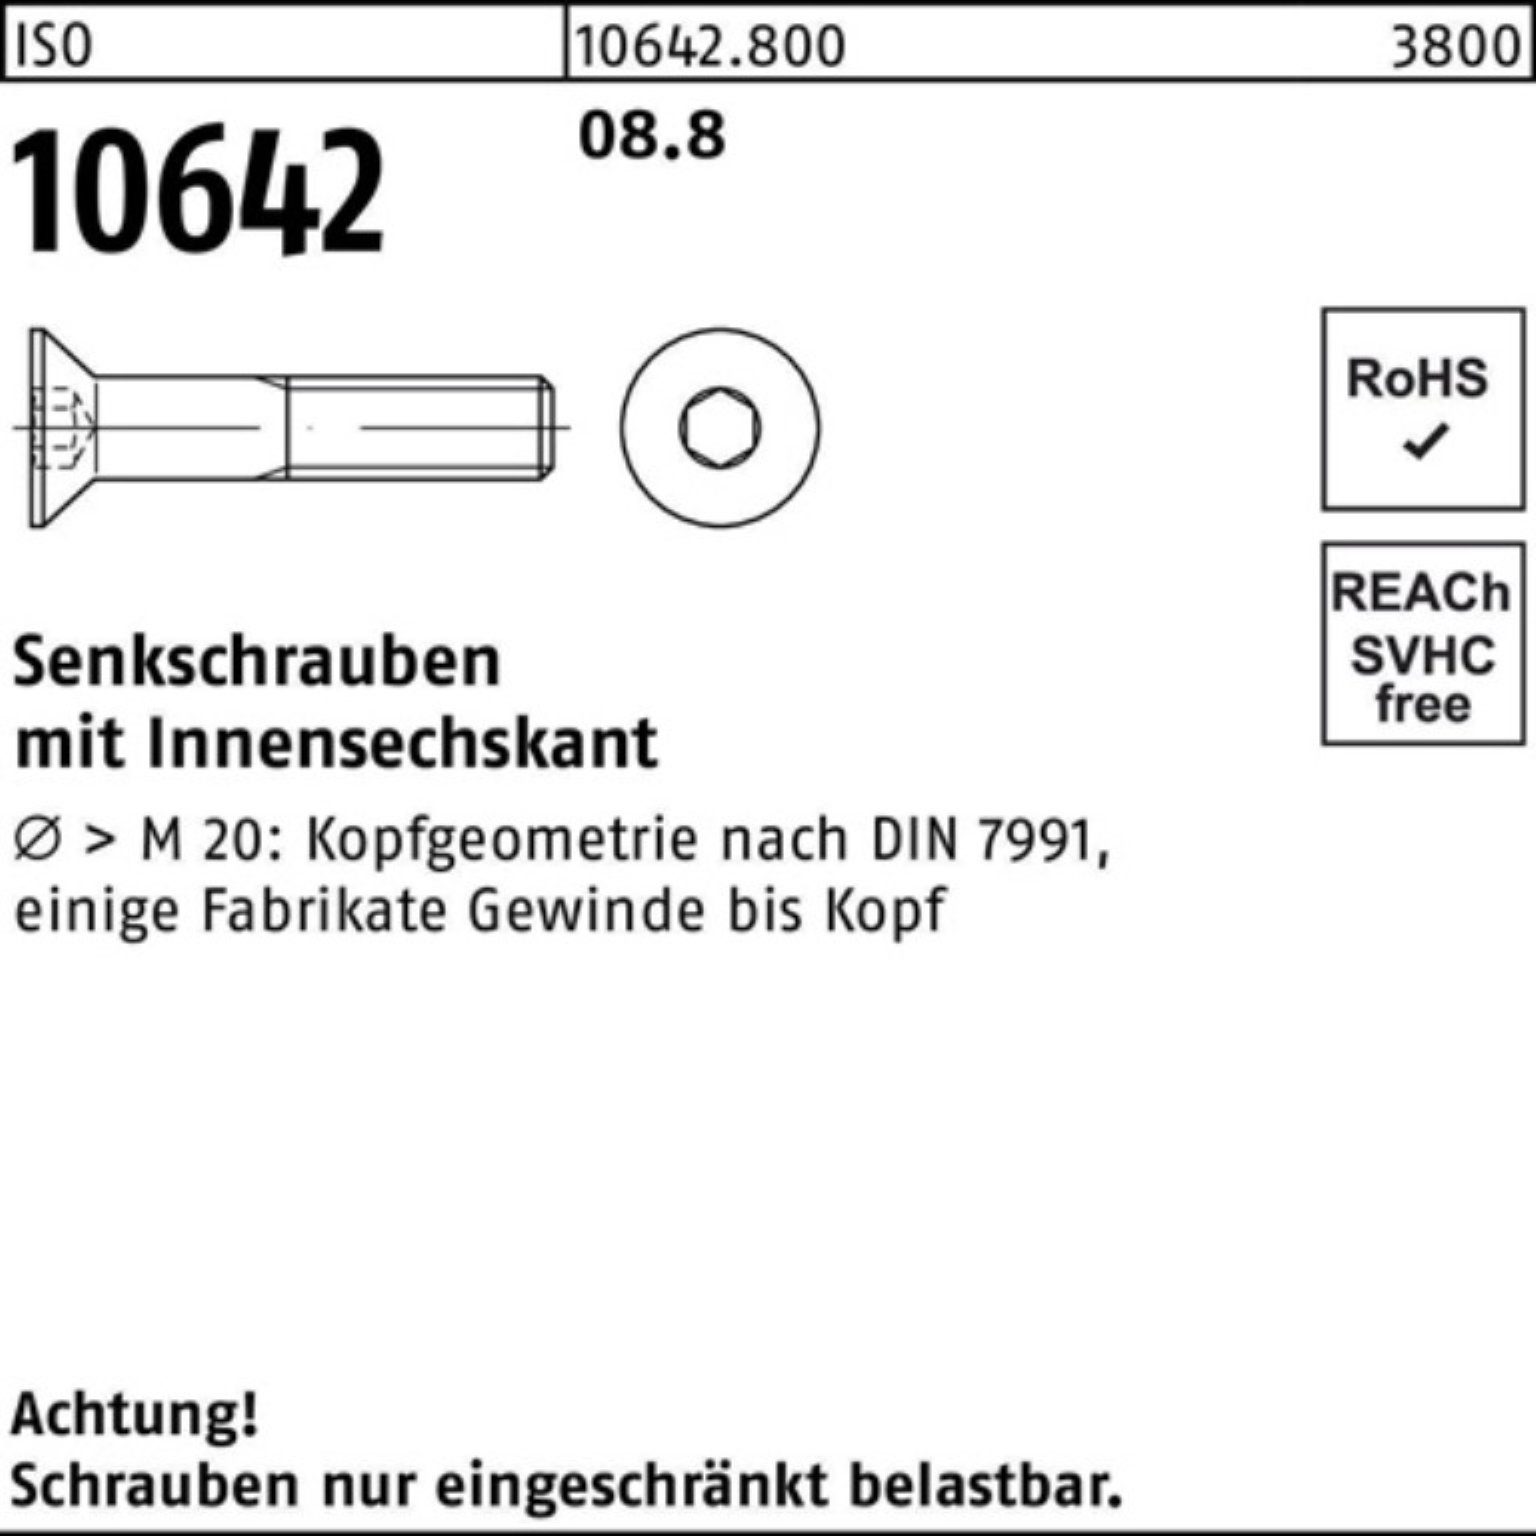 Senkschraube 10642 100 Reyher ISO Pack Senkschraube Stück Innen-6kt 100er 8.8 25 M12x ISO